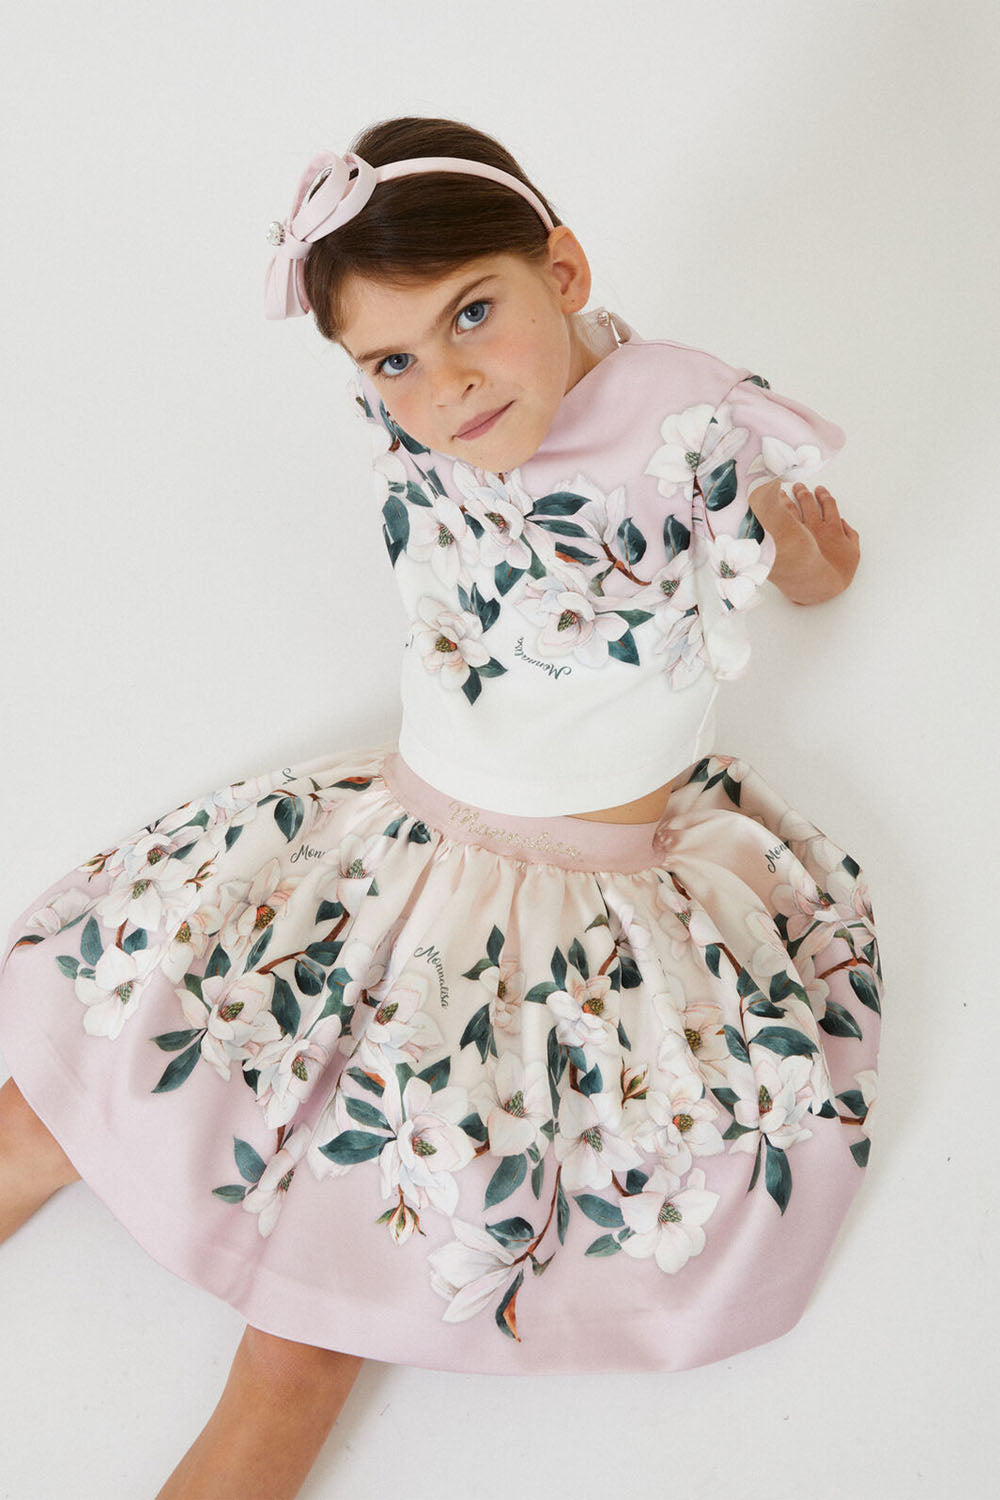 Multi Print Skirt for Girls - Maison7